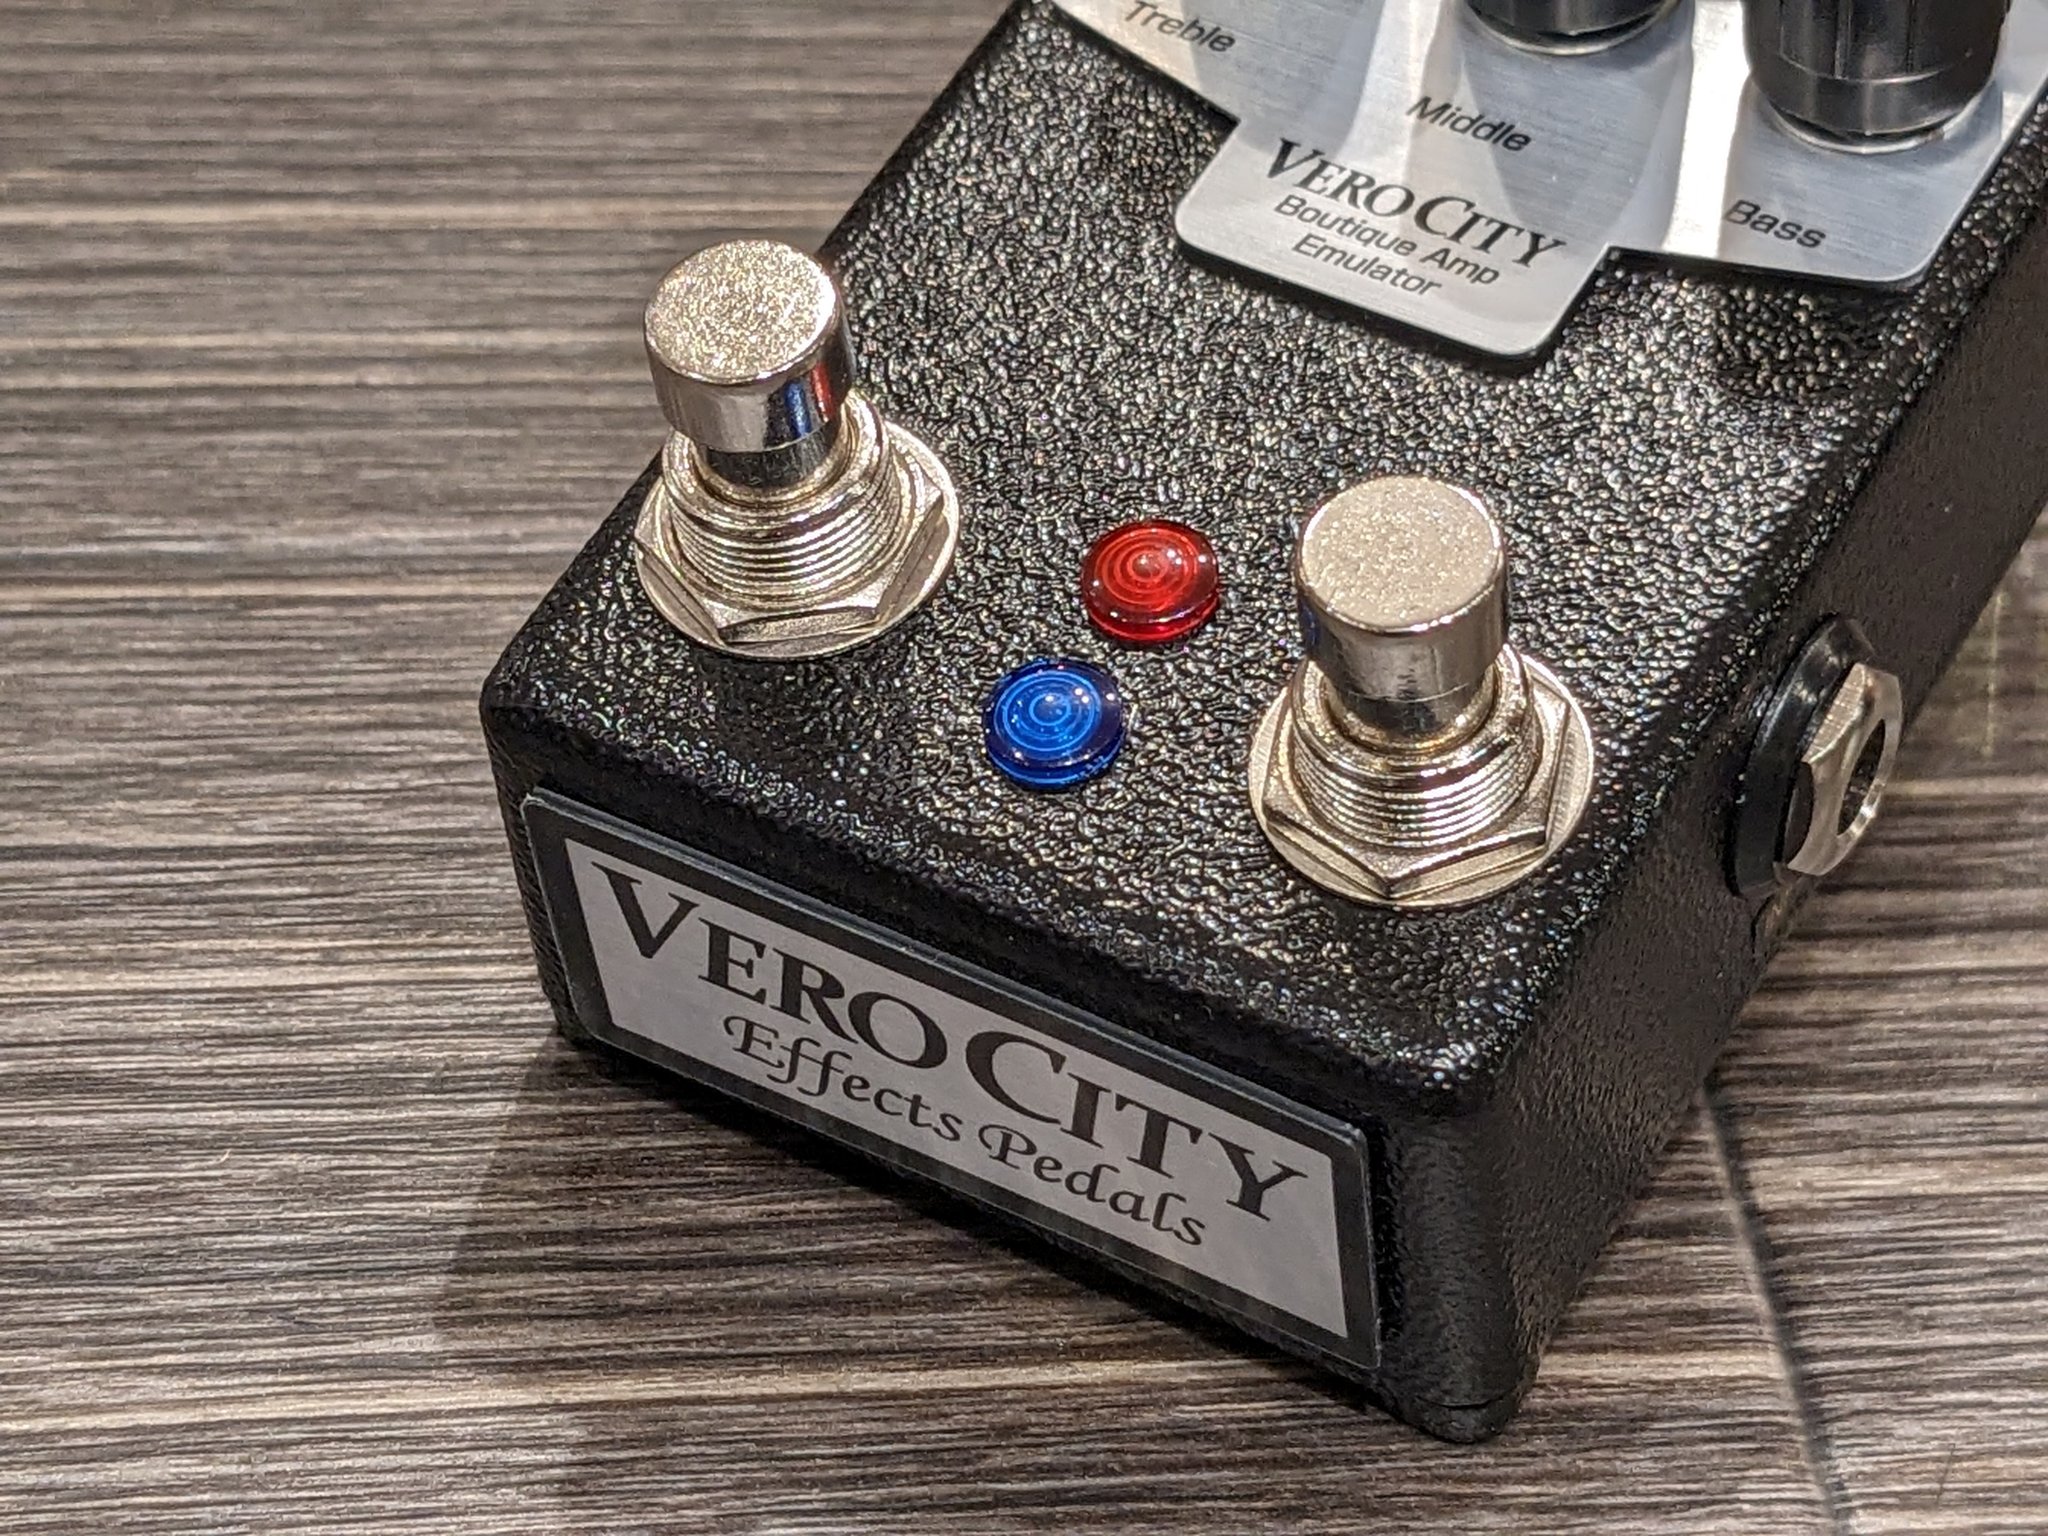 【即納可能】VeroCity Effects Pedals(ヴェロシティ) E-GL-B2  京都店